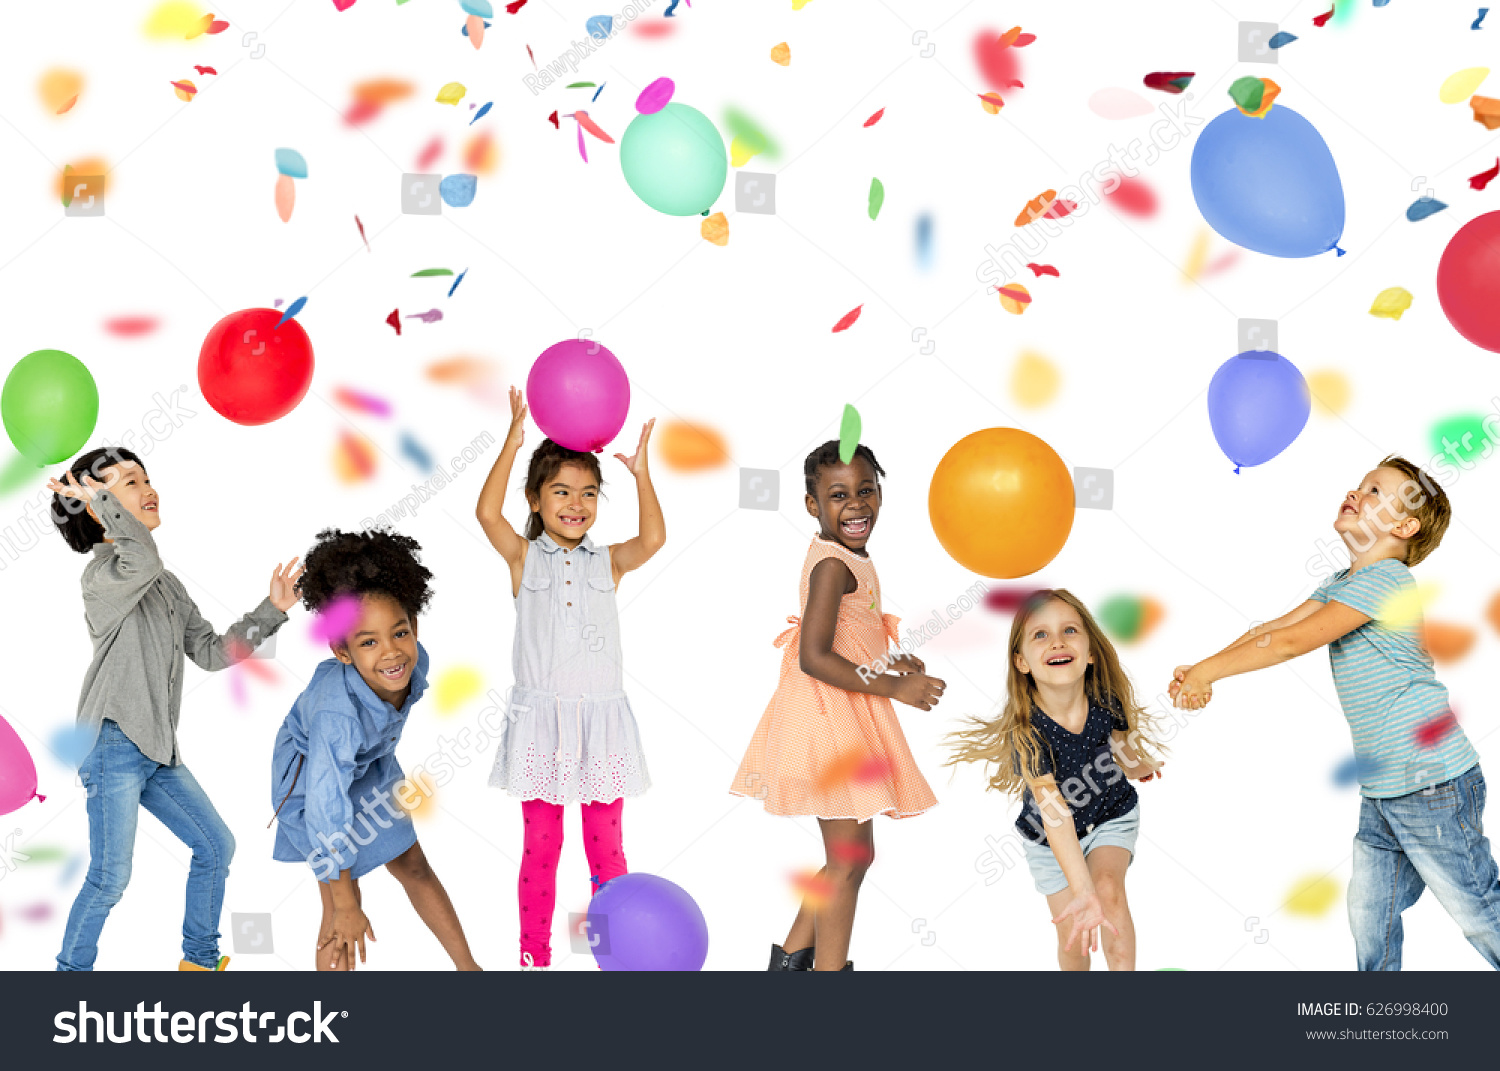 Image result for images of kids celebrating